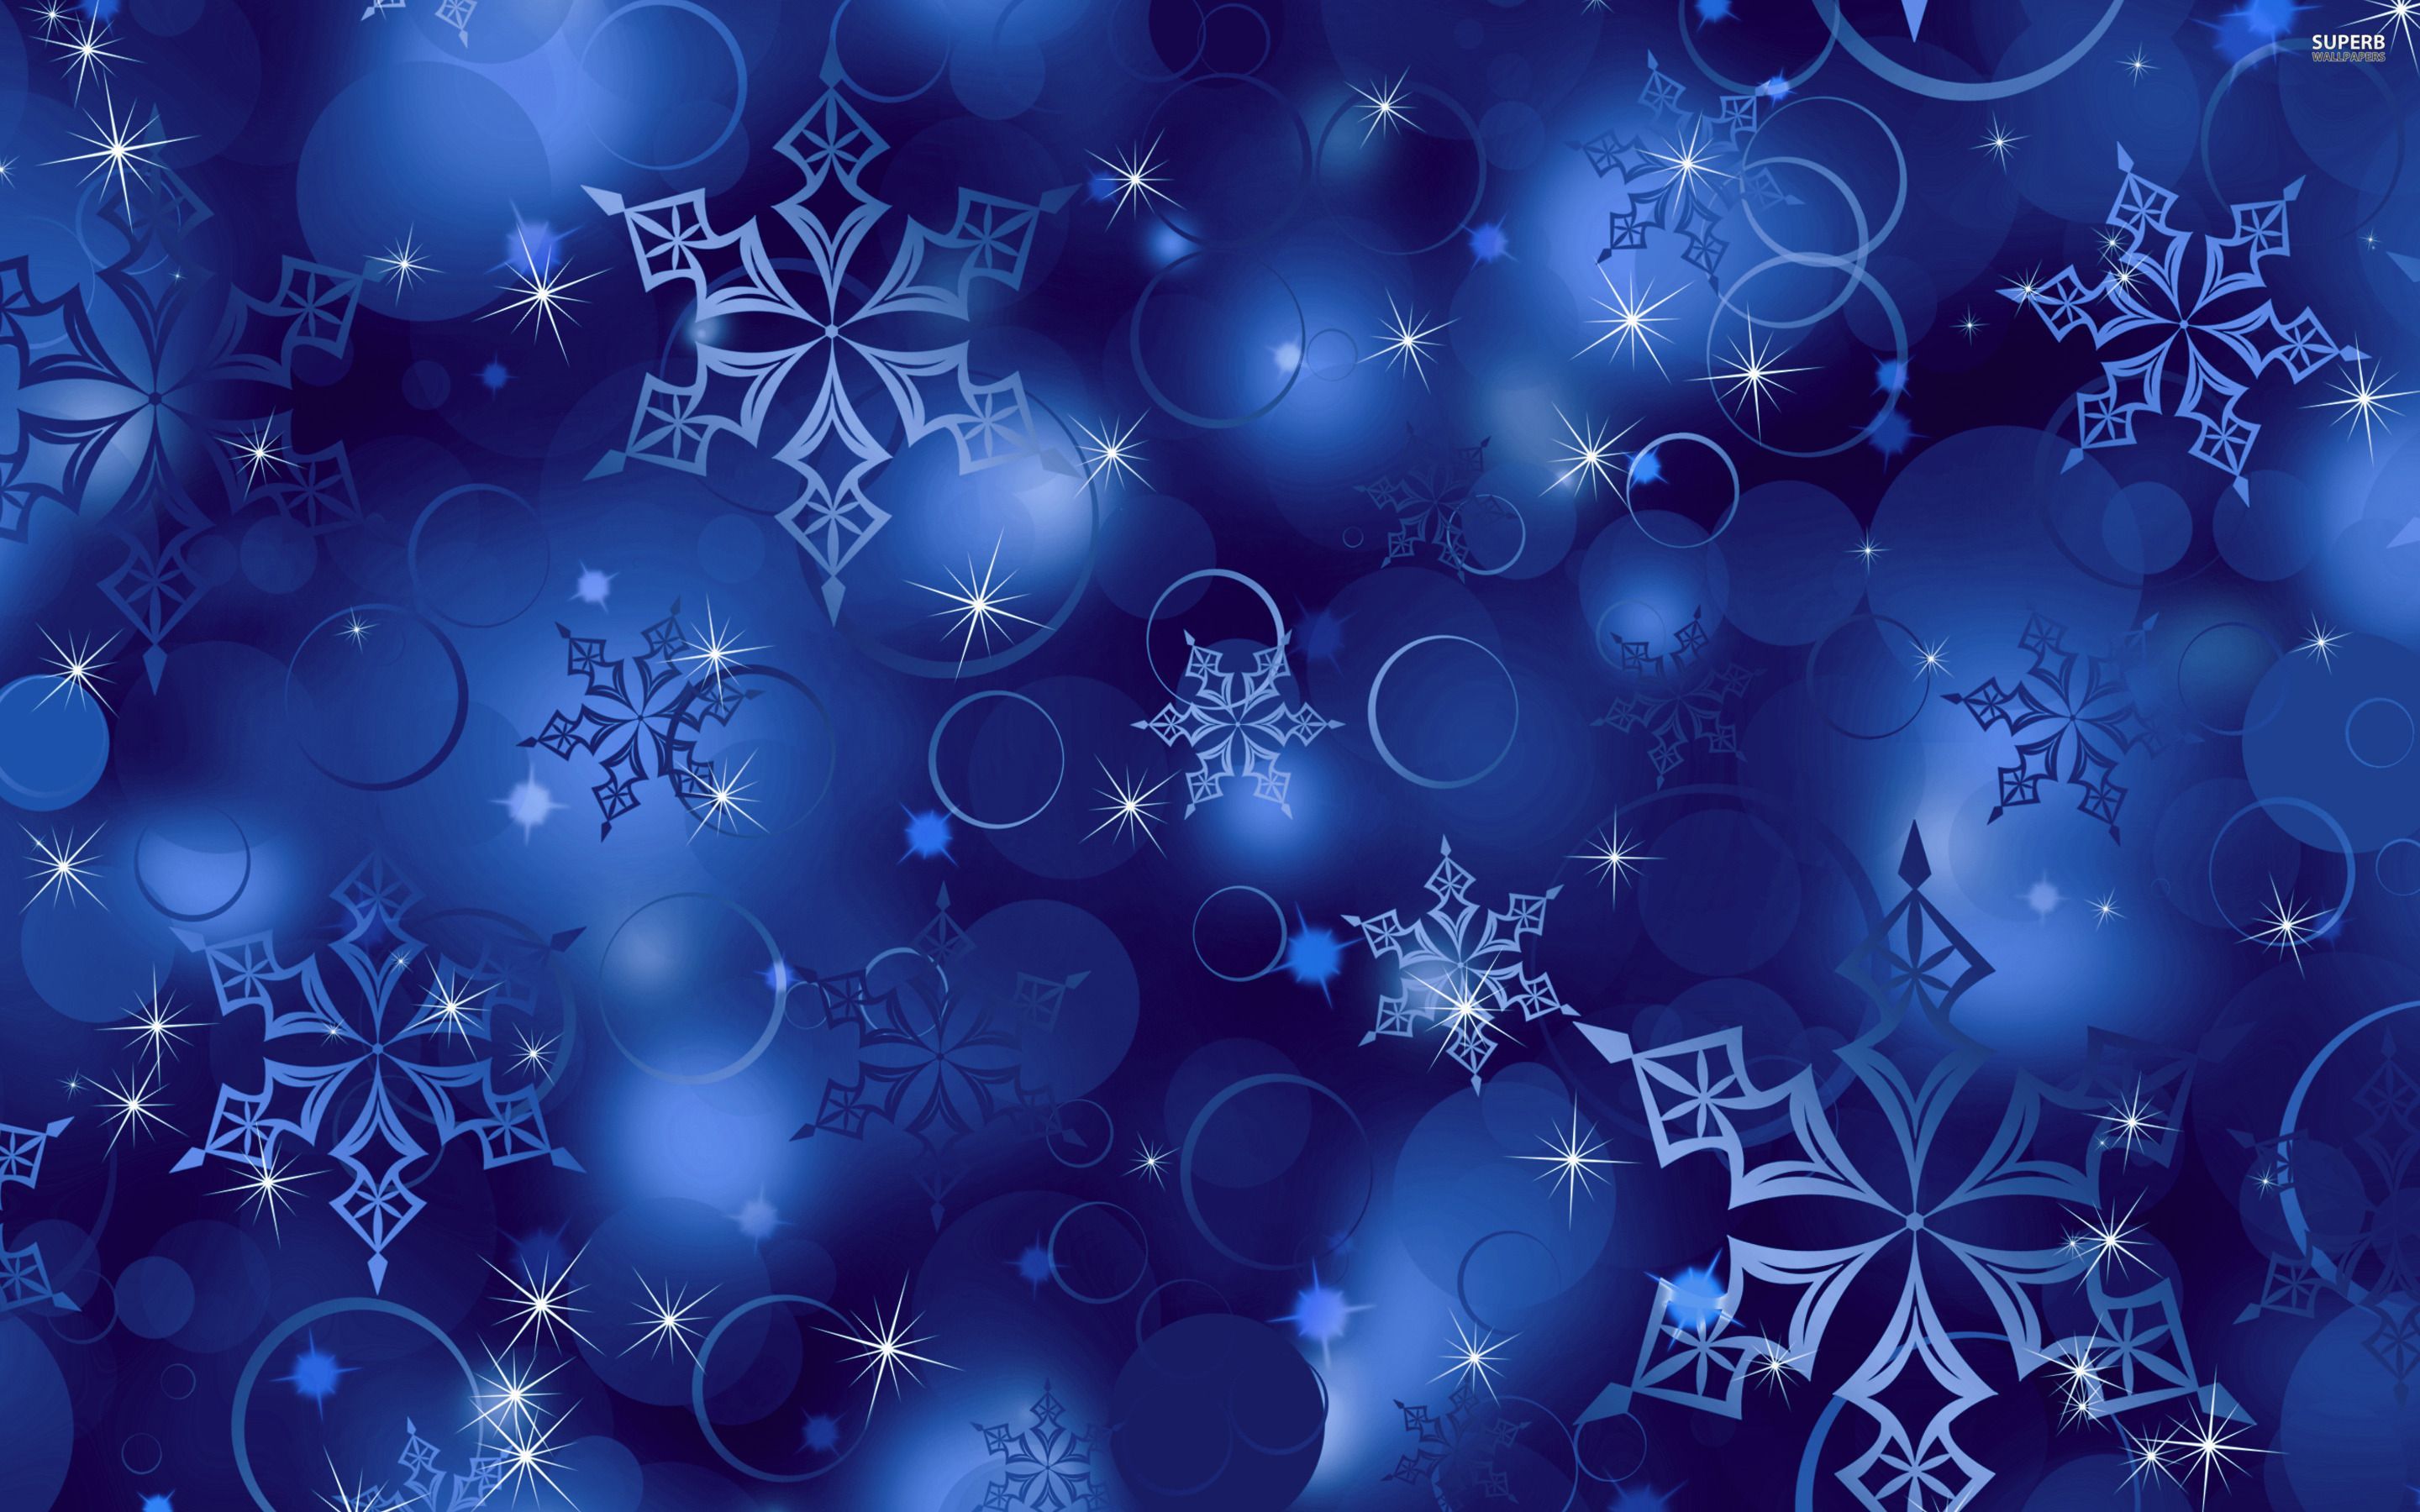 Snowflake Christmas Wallpaper by Estavan Buyers, Gold